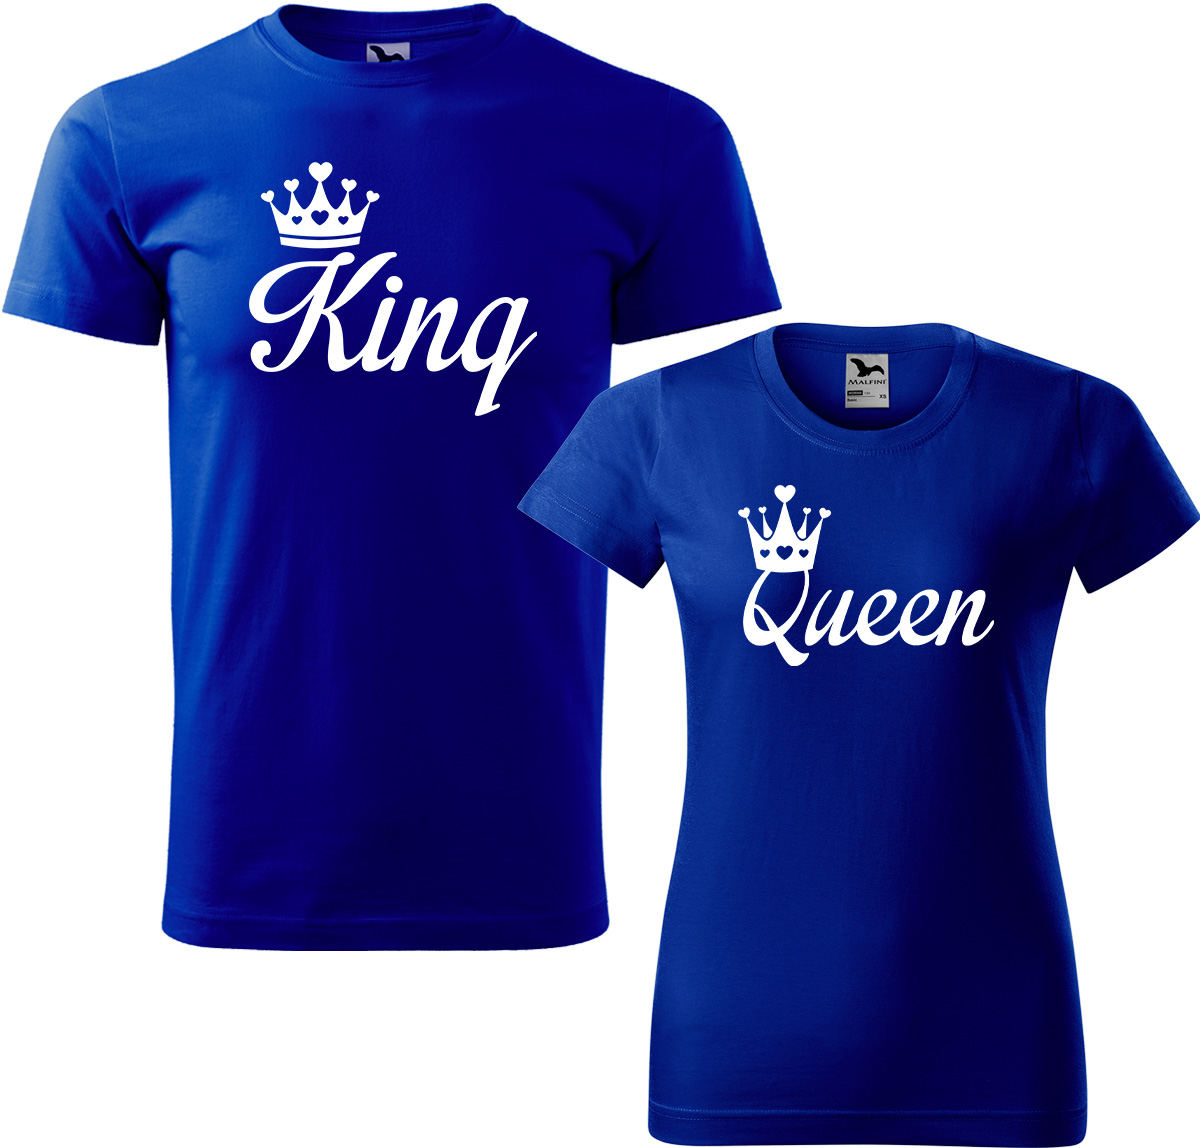 Trička pro páry - King a queen Barva: Královská modrá (05), Velikost dámské tričko: XL, Velikost pánské tričko: XL